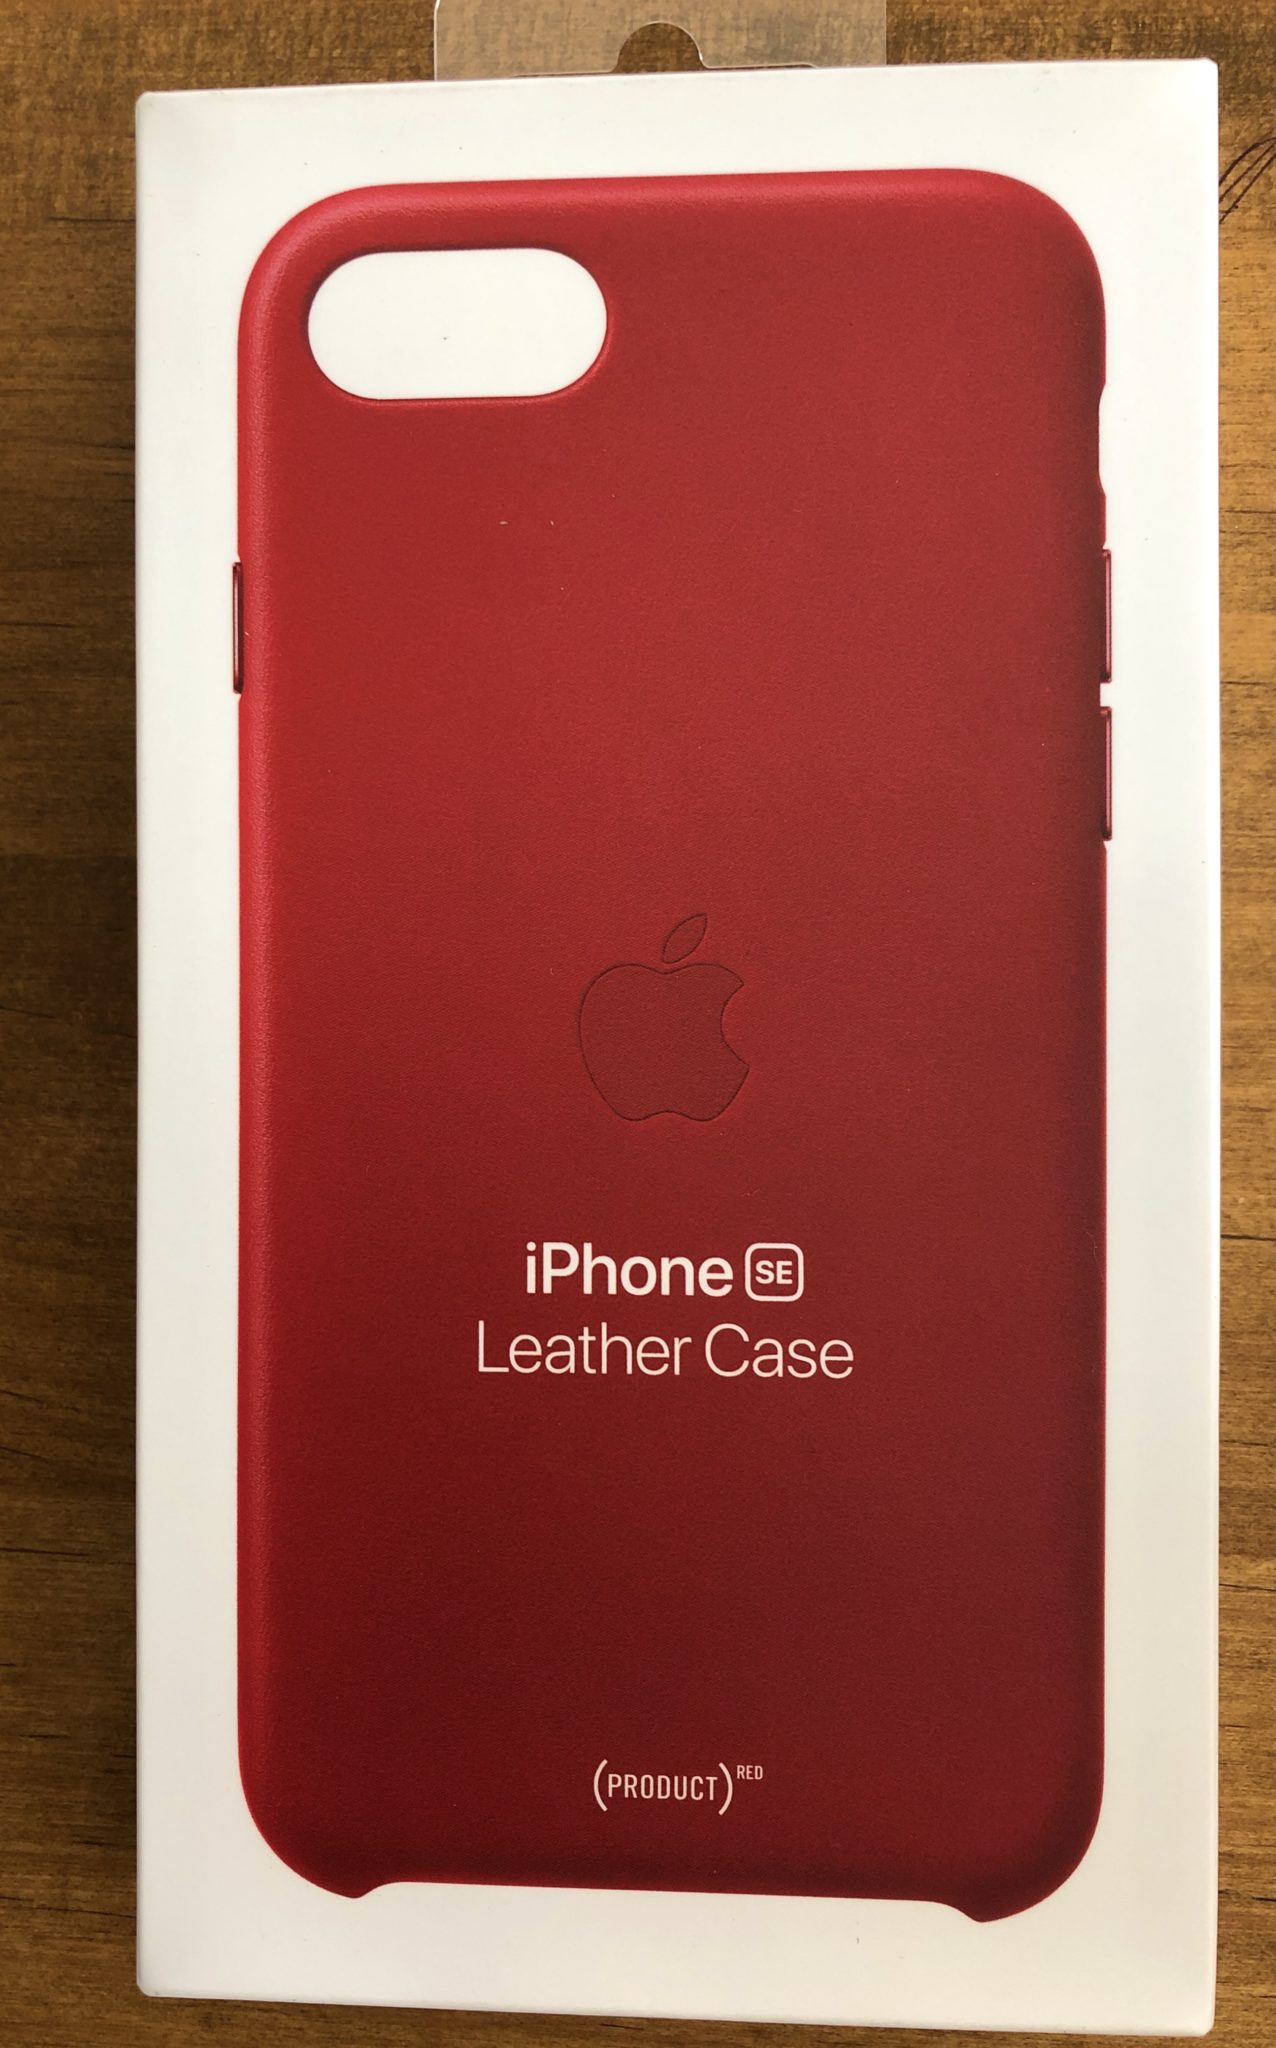 iPhone SE 純正レザーケース PRODUCT(RED)をiPhone8につけてみる 